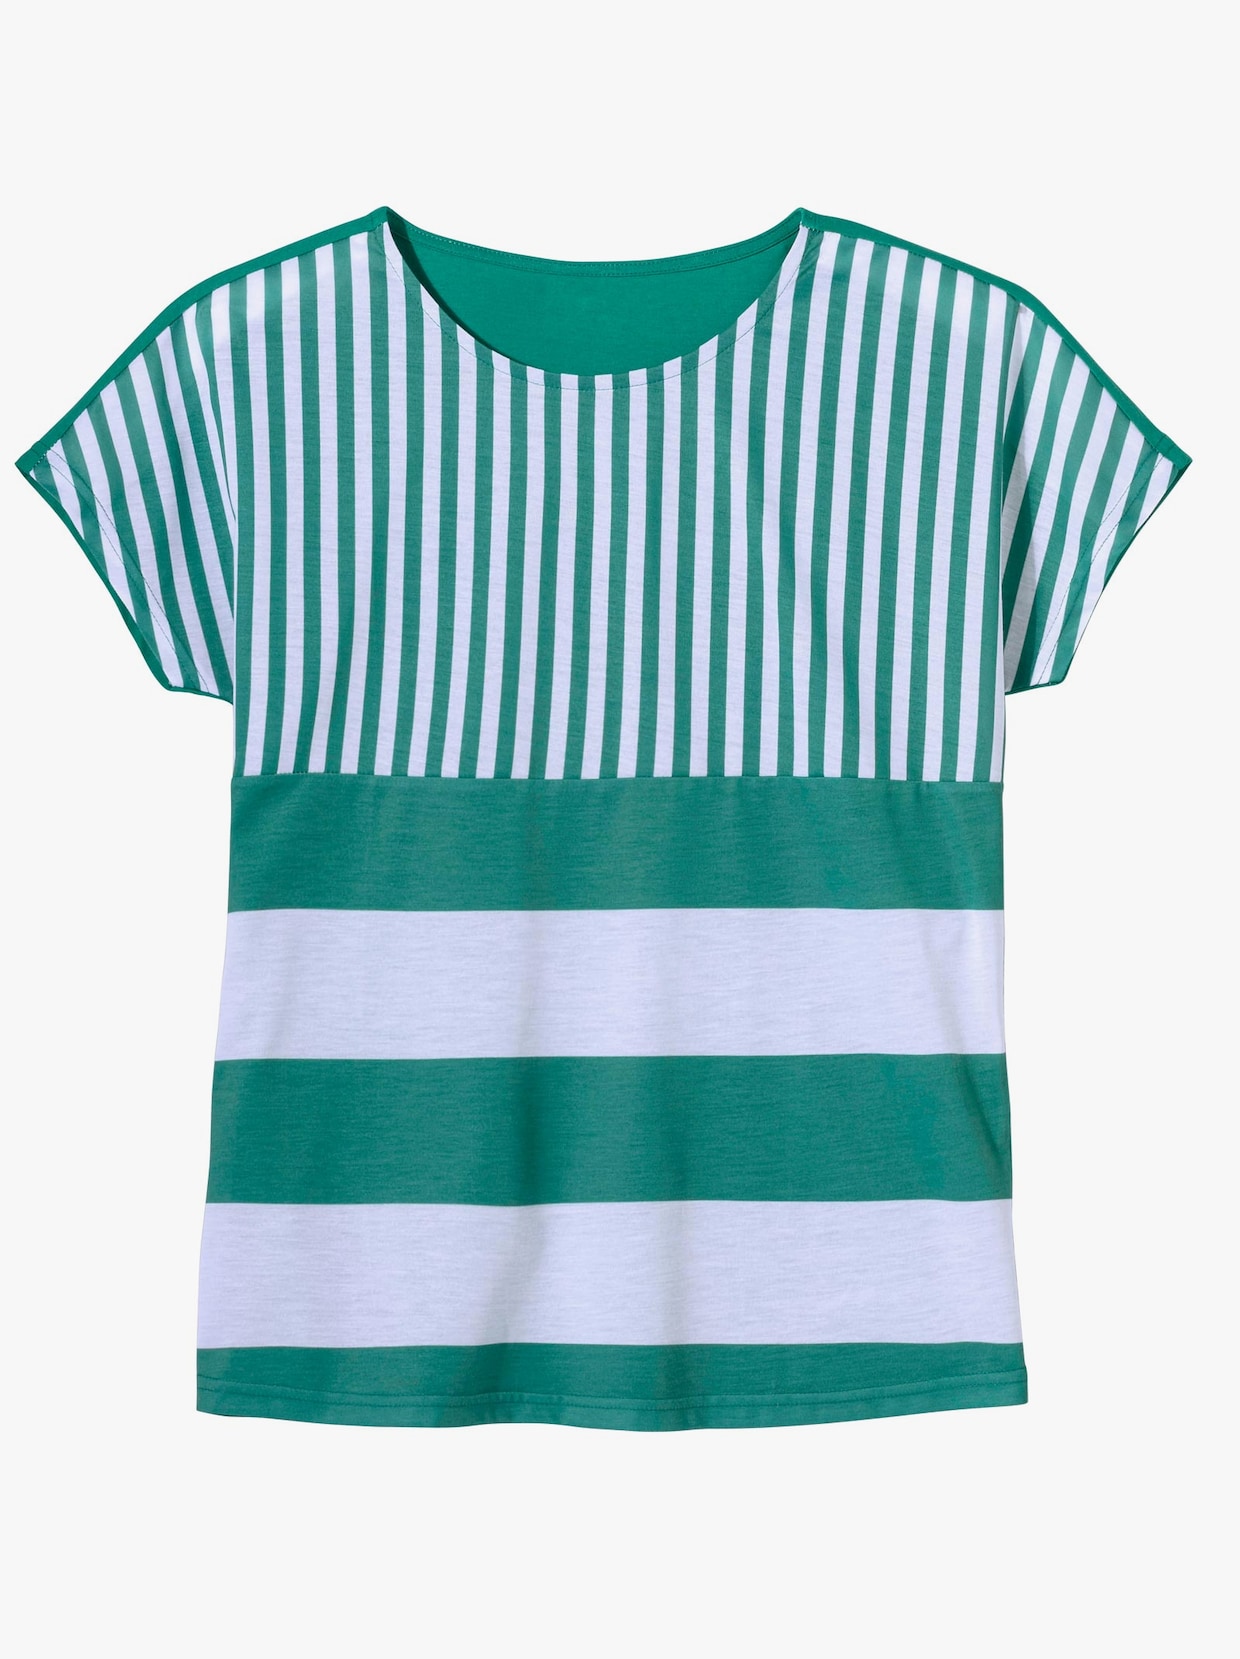 Proužkované tričko - smaragdová-bílá-proužek